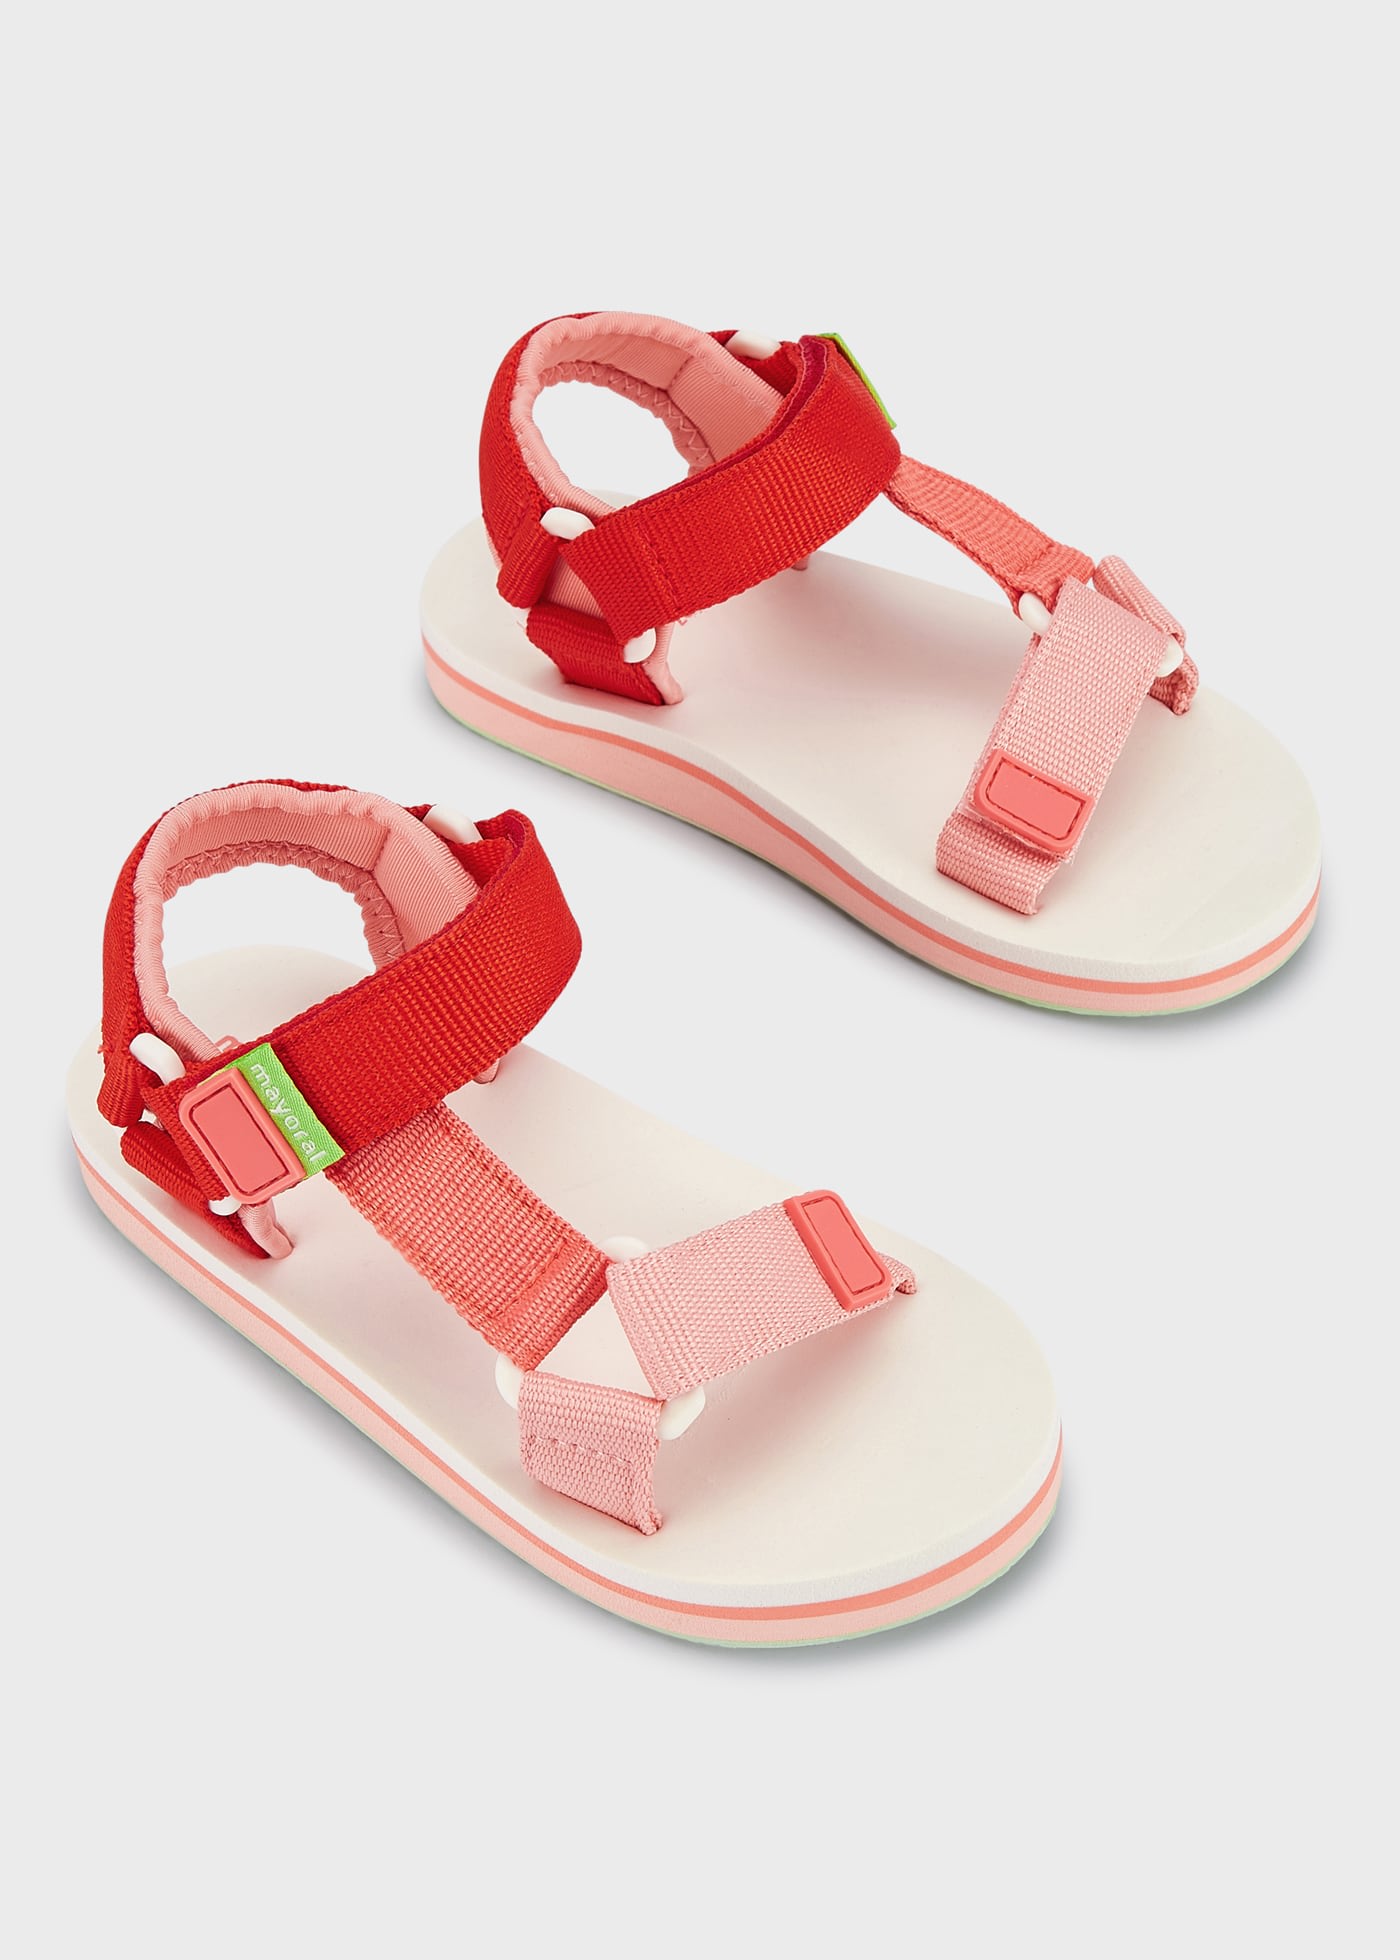 Sandałki kolorowe dla niemowlęcia